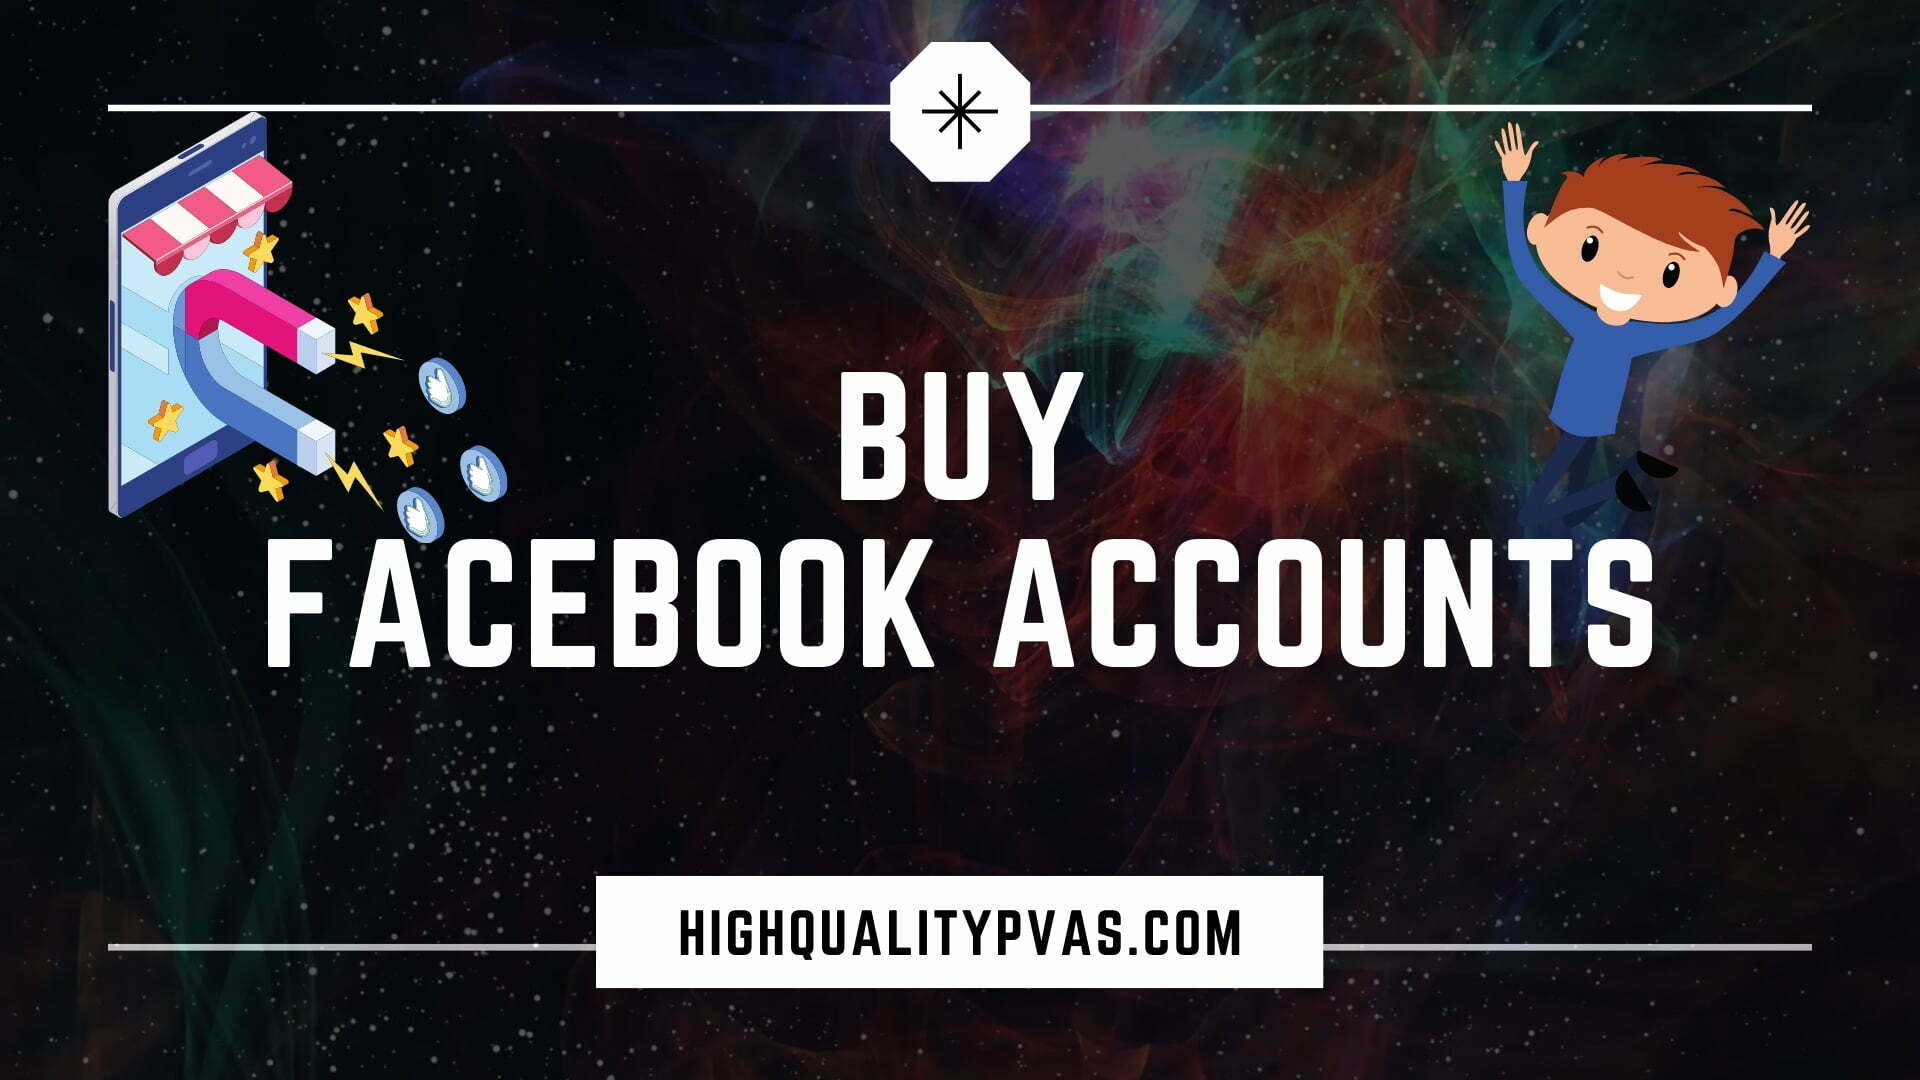 Facebook PVA Accounts